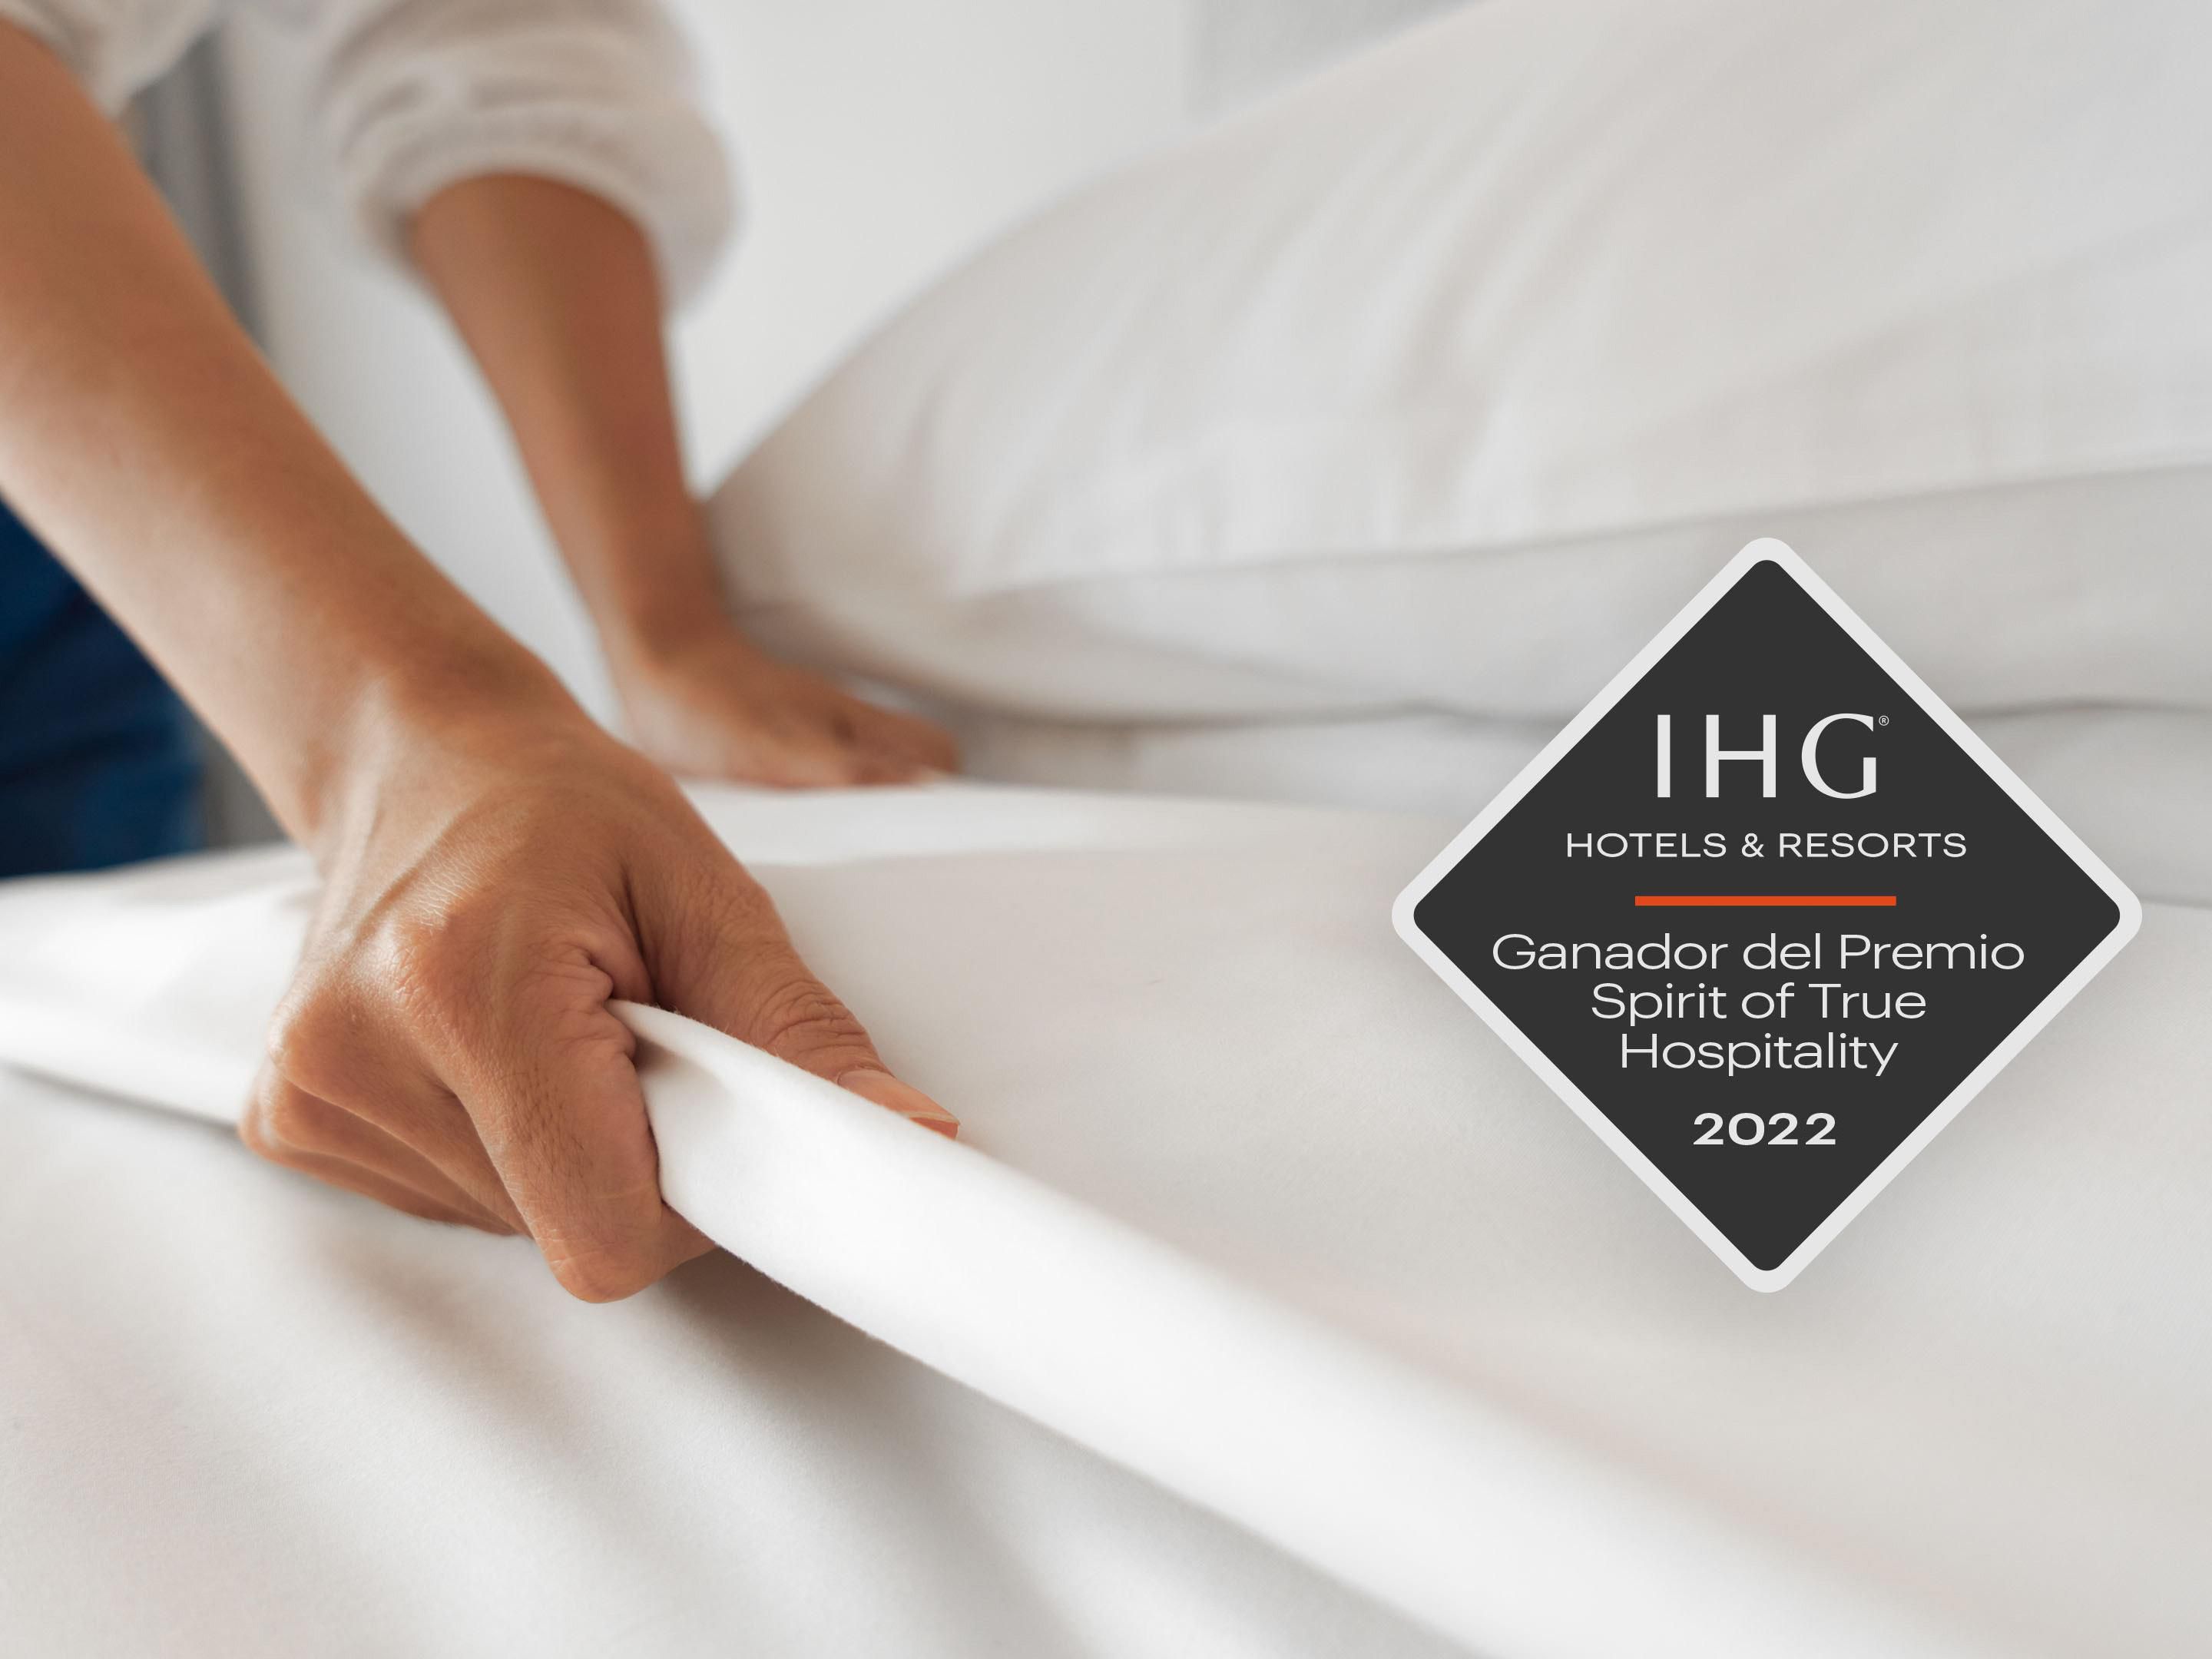 Este hotel fue reconocido entre los
4,000 hoteles IHG en las Américas por sus más altos niveles de
excelencia en la calidad, satisfacción y limpieza.